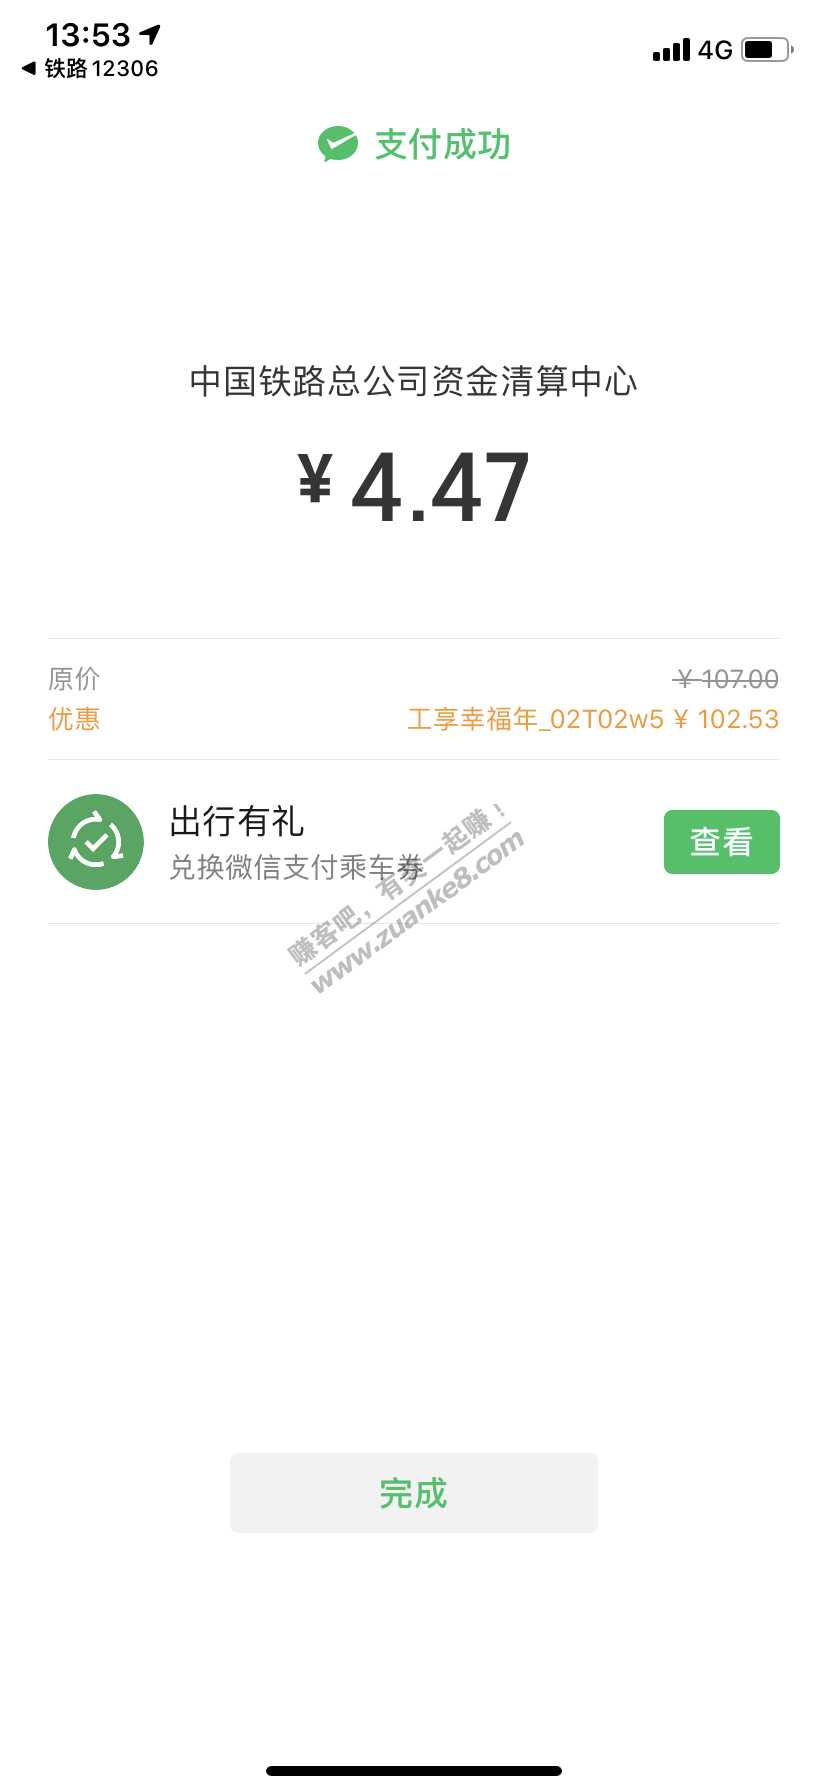 一二306火车票支付大水-惠小助(52huixz.com)